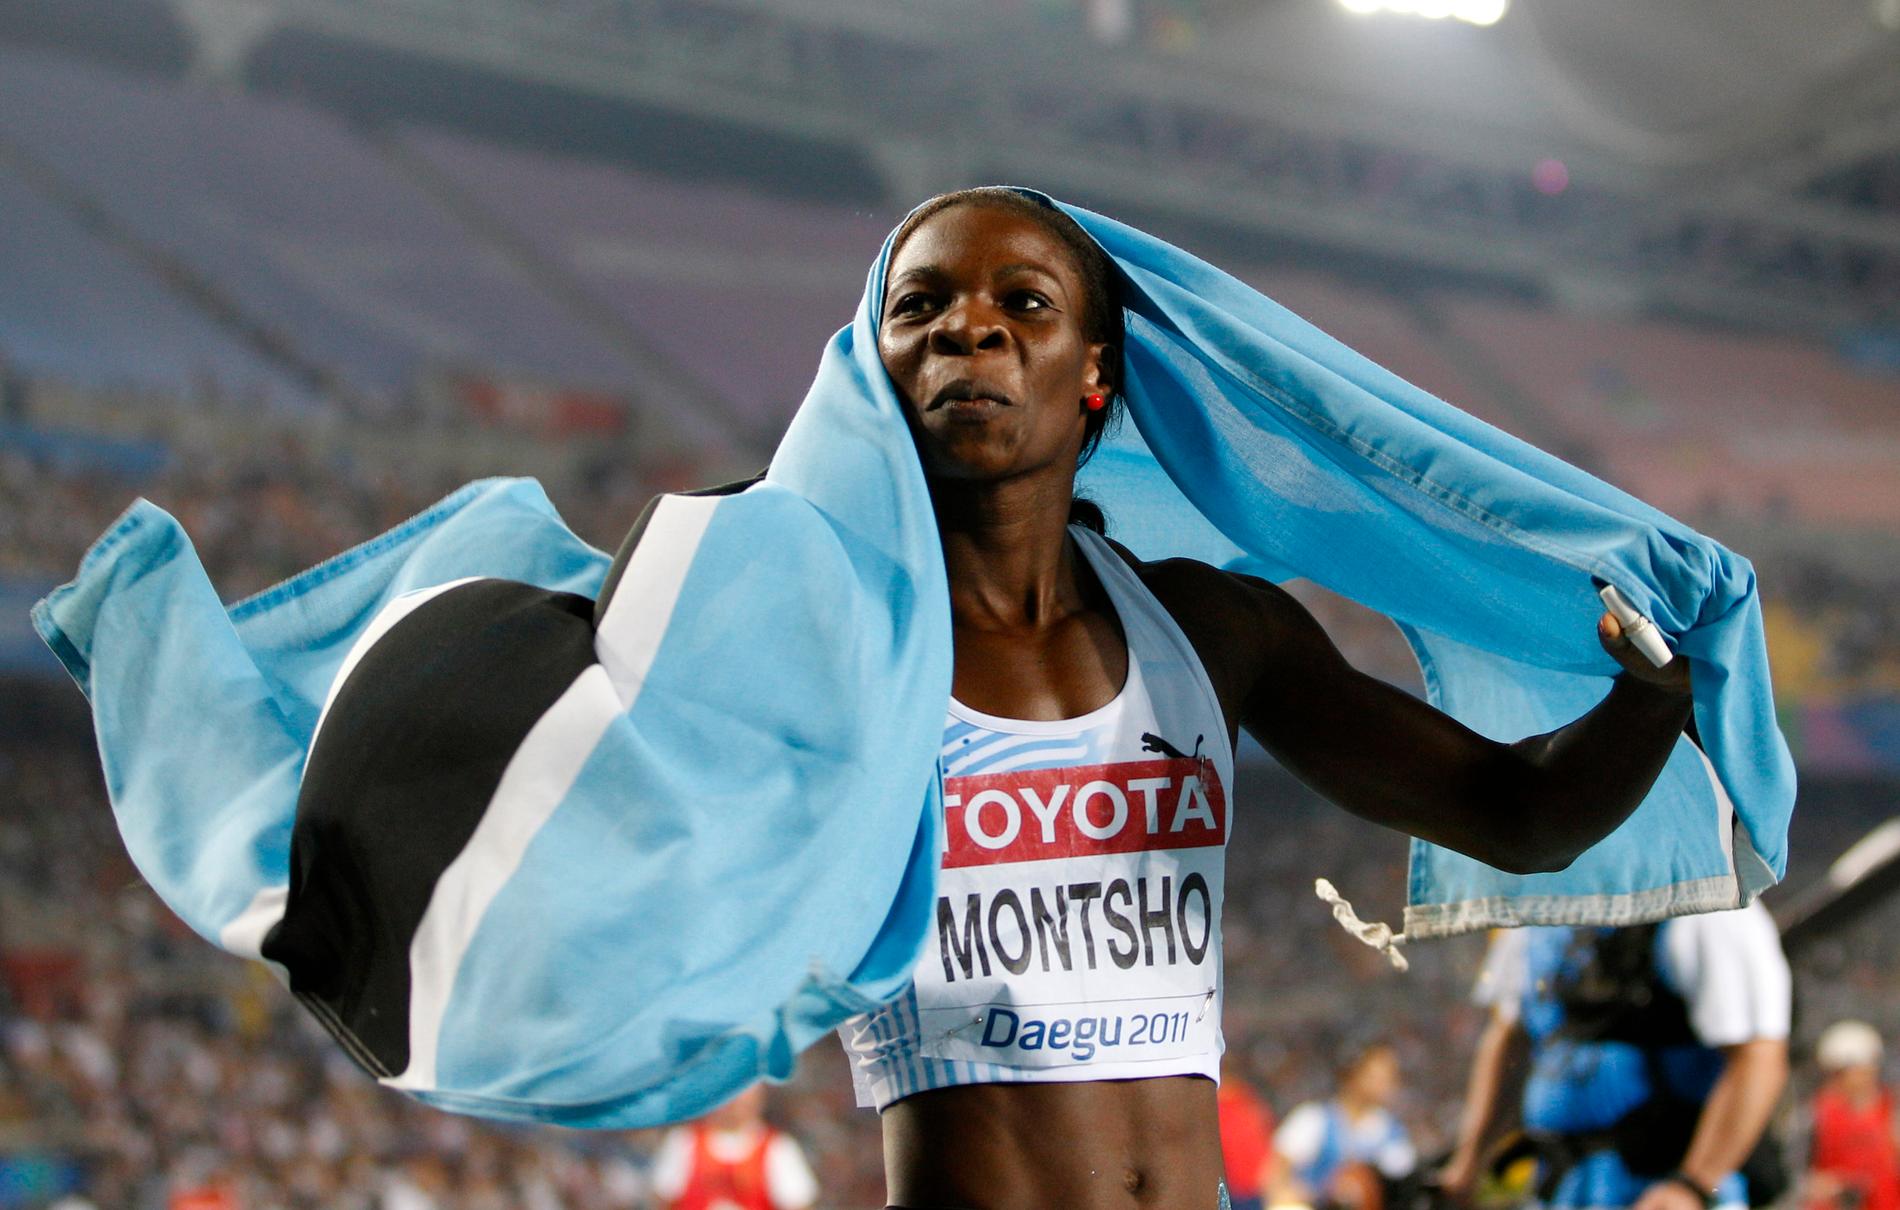 Amantle Montsho vann VM-guld 2011 – sedan åkte hon fast för dopning.